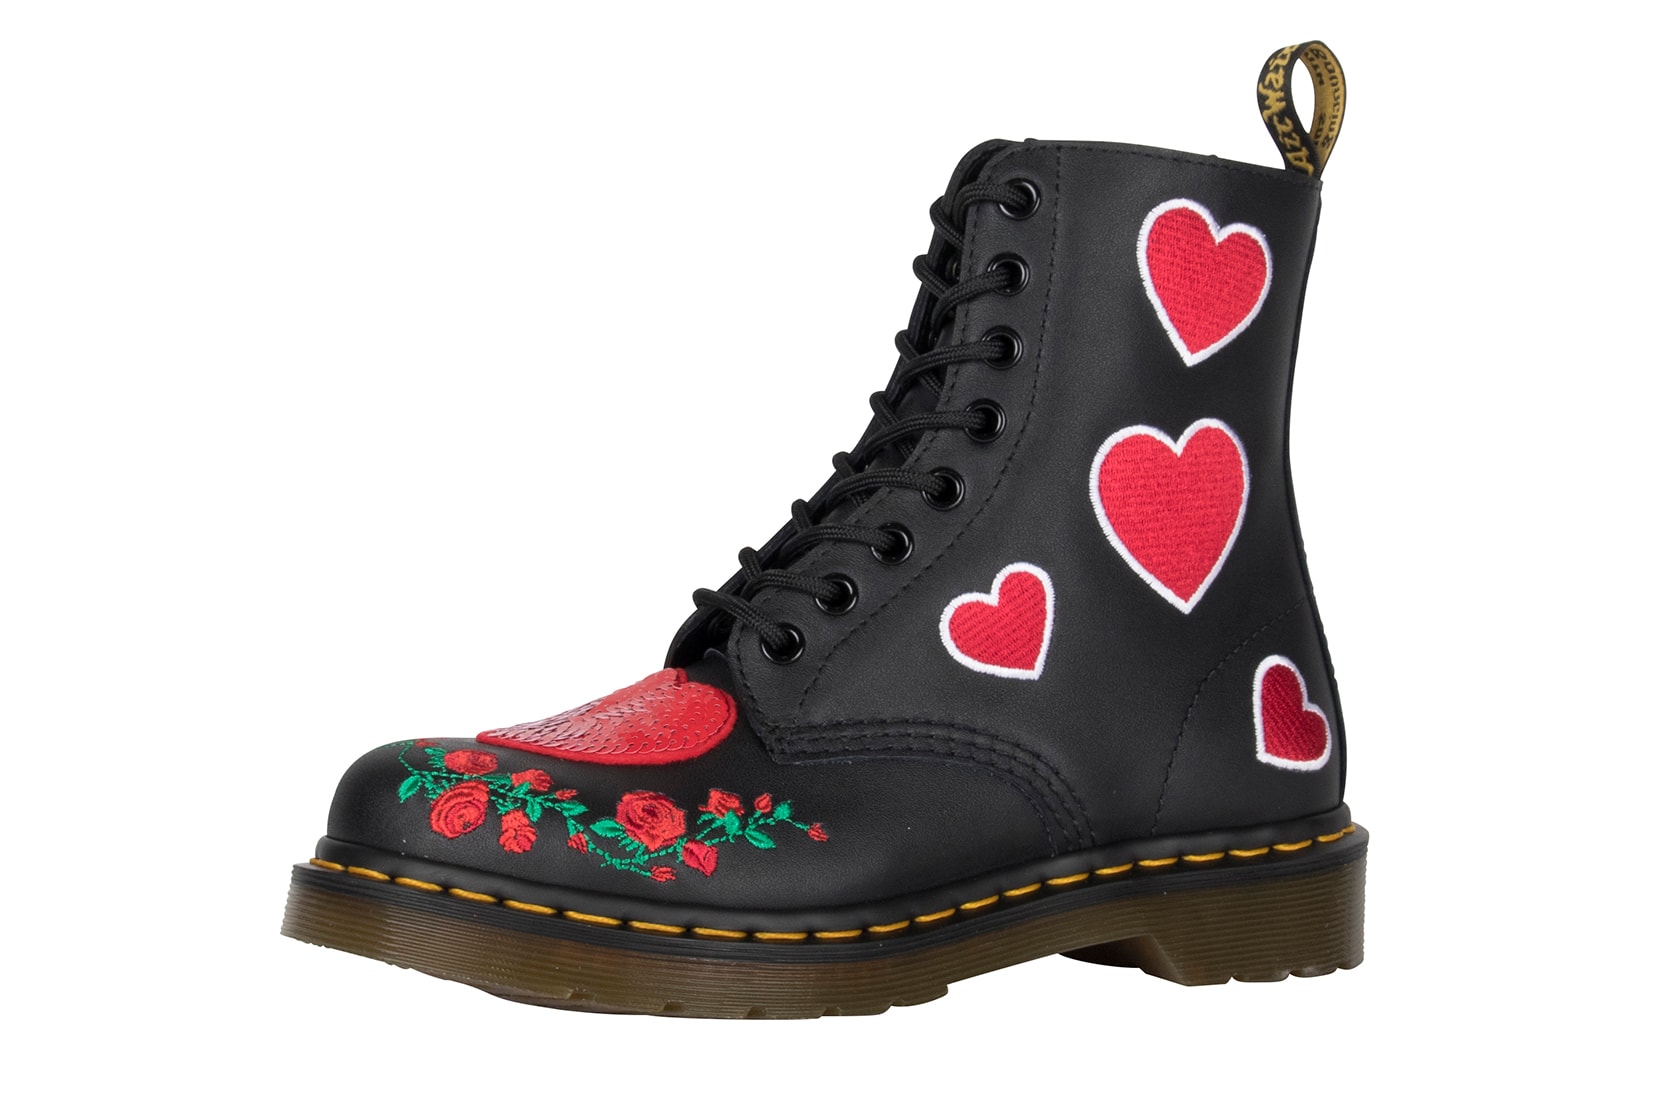 Dr. Martens Valentine's Day Rebel Heart Boots Shoes Satchel Bag Pink Black 